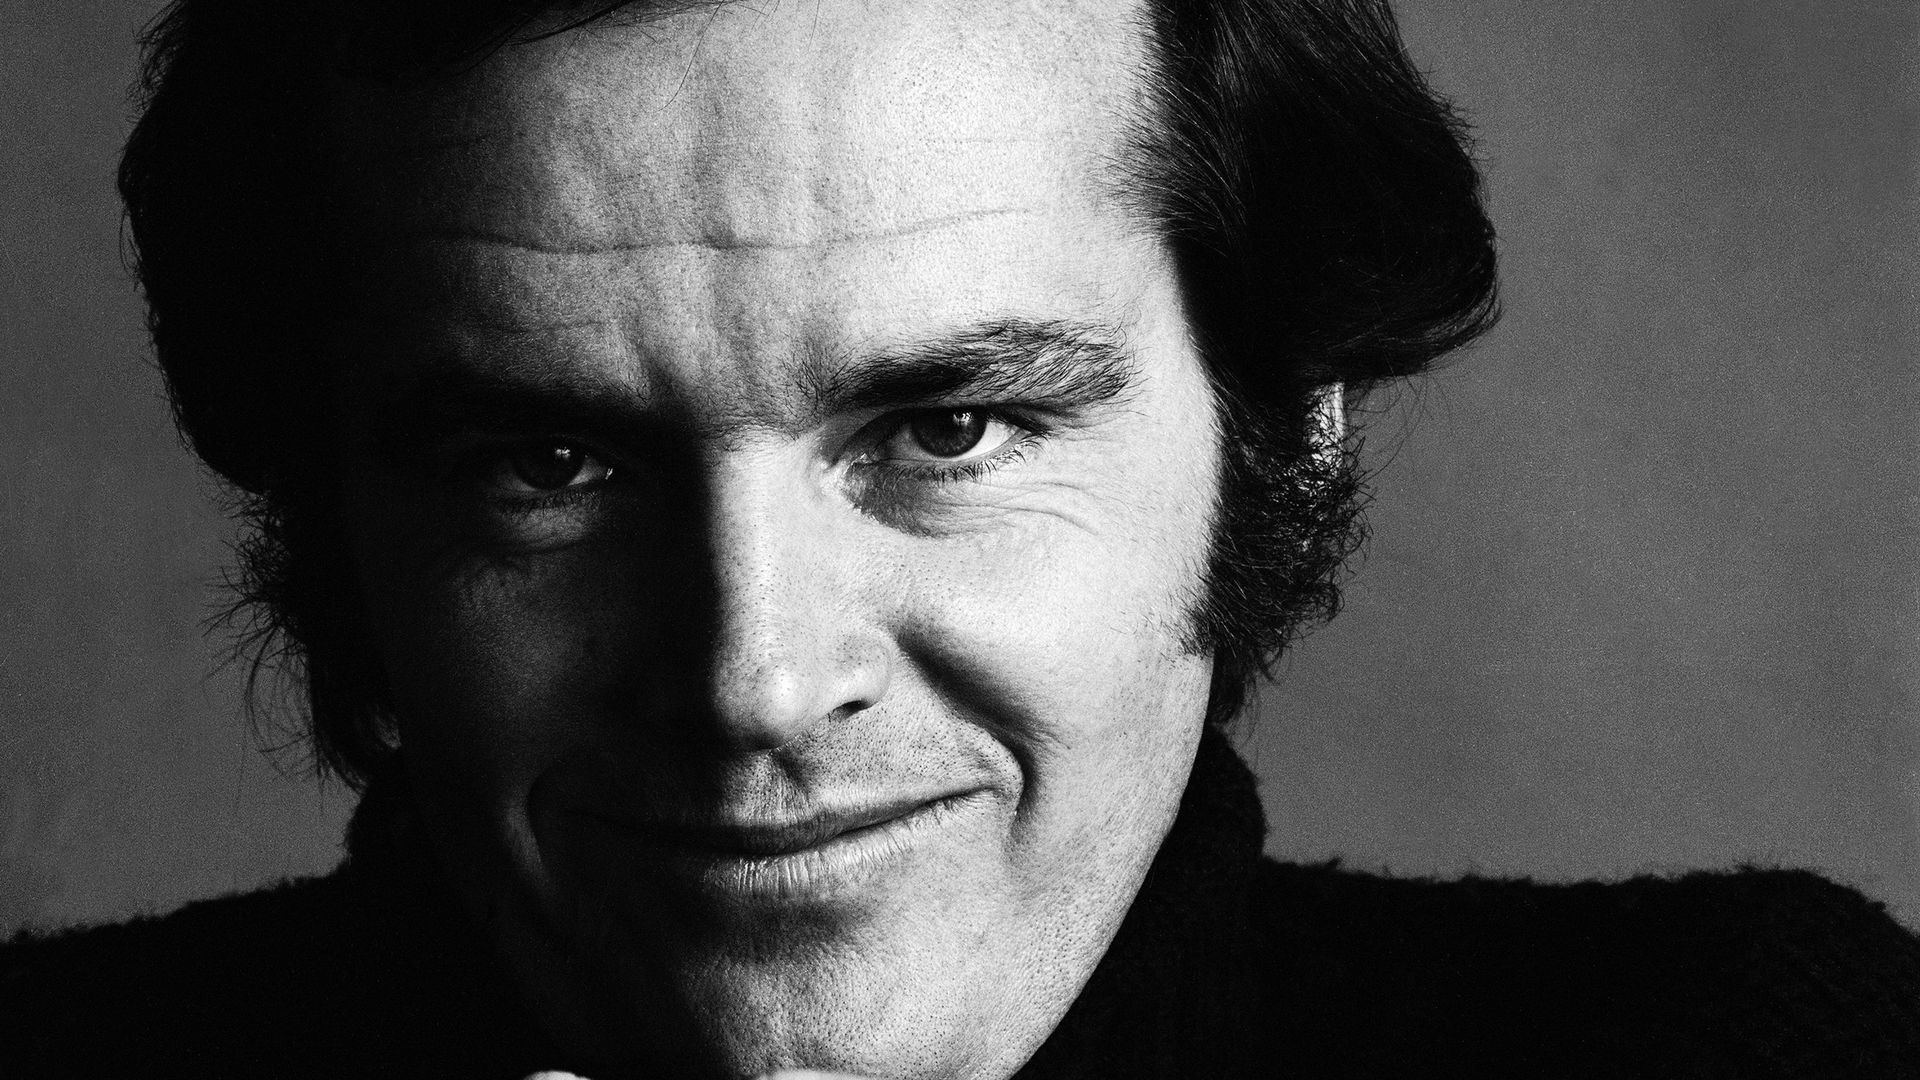 Qui est vraiment Jack Nicholson? Portrait de cet acteur mystérieux